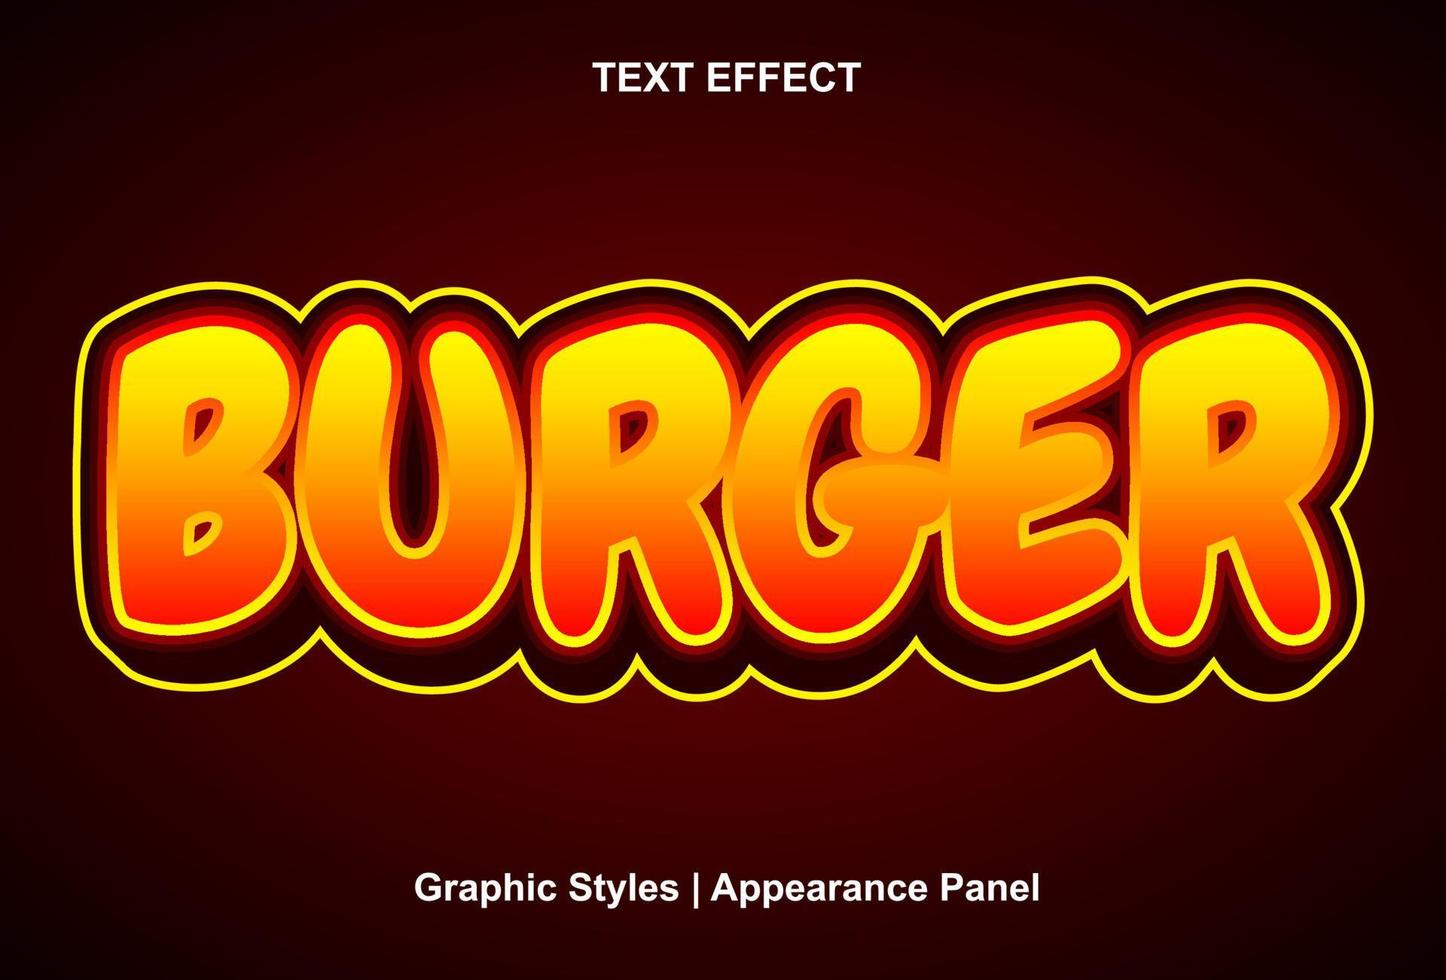 efecto de texto de hamburguesa con estilo gráfico y editable. vector